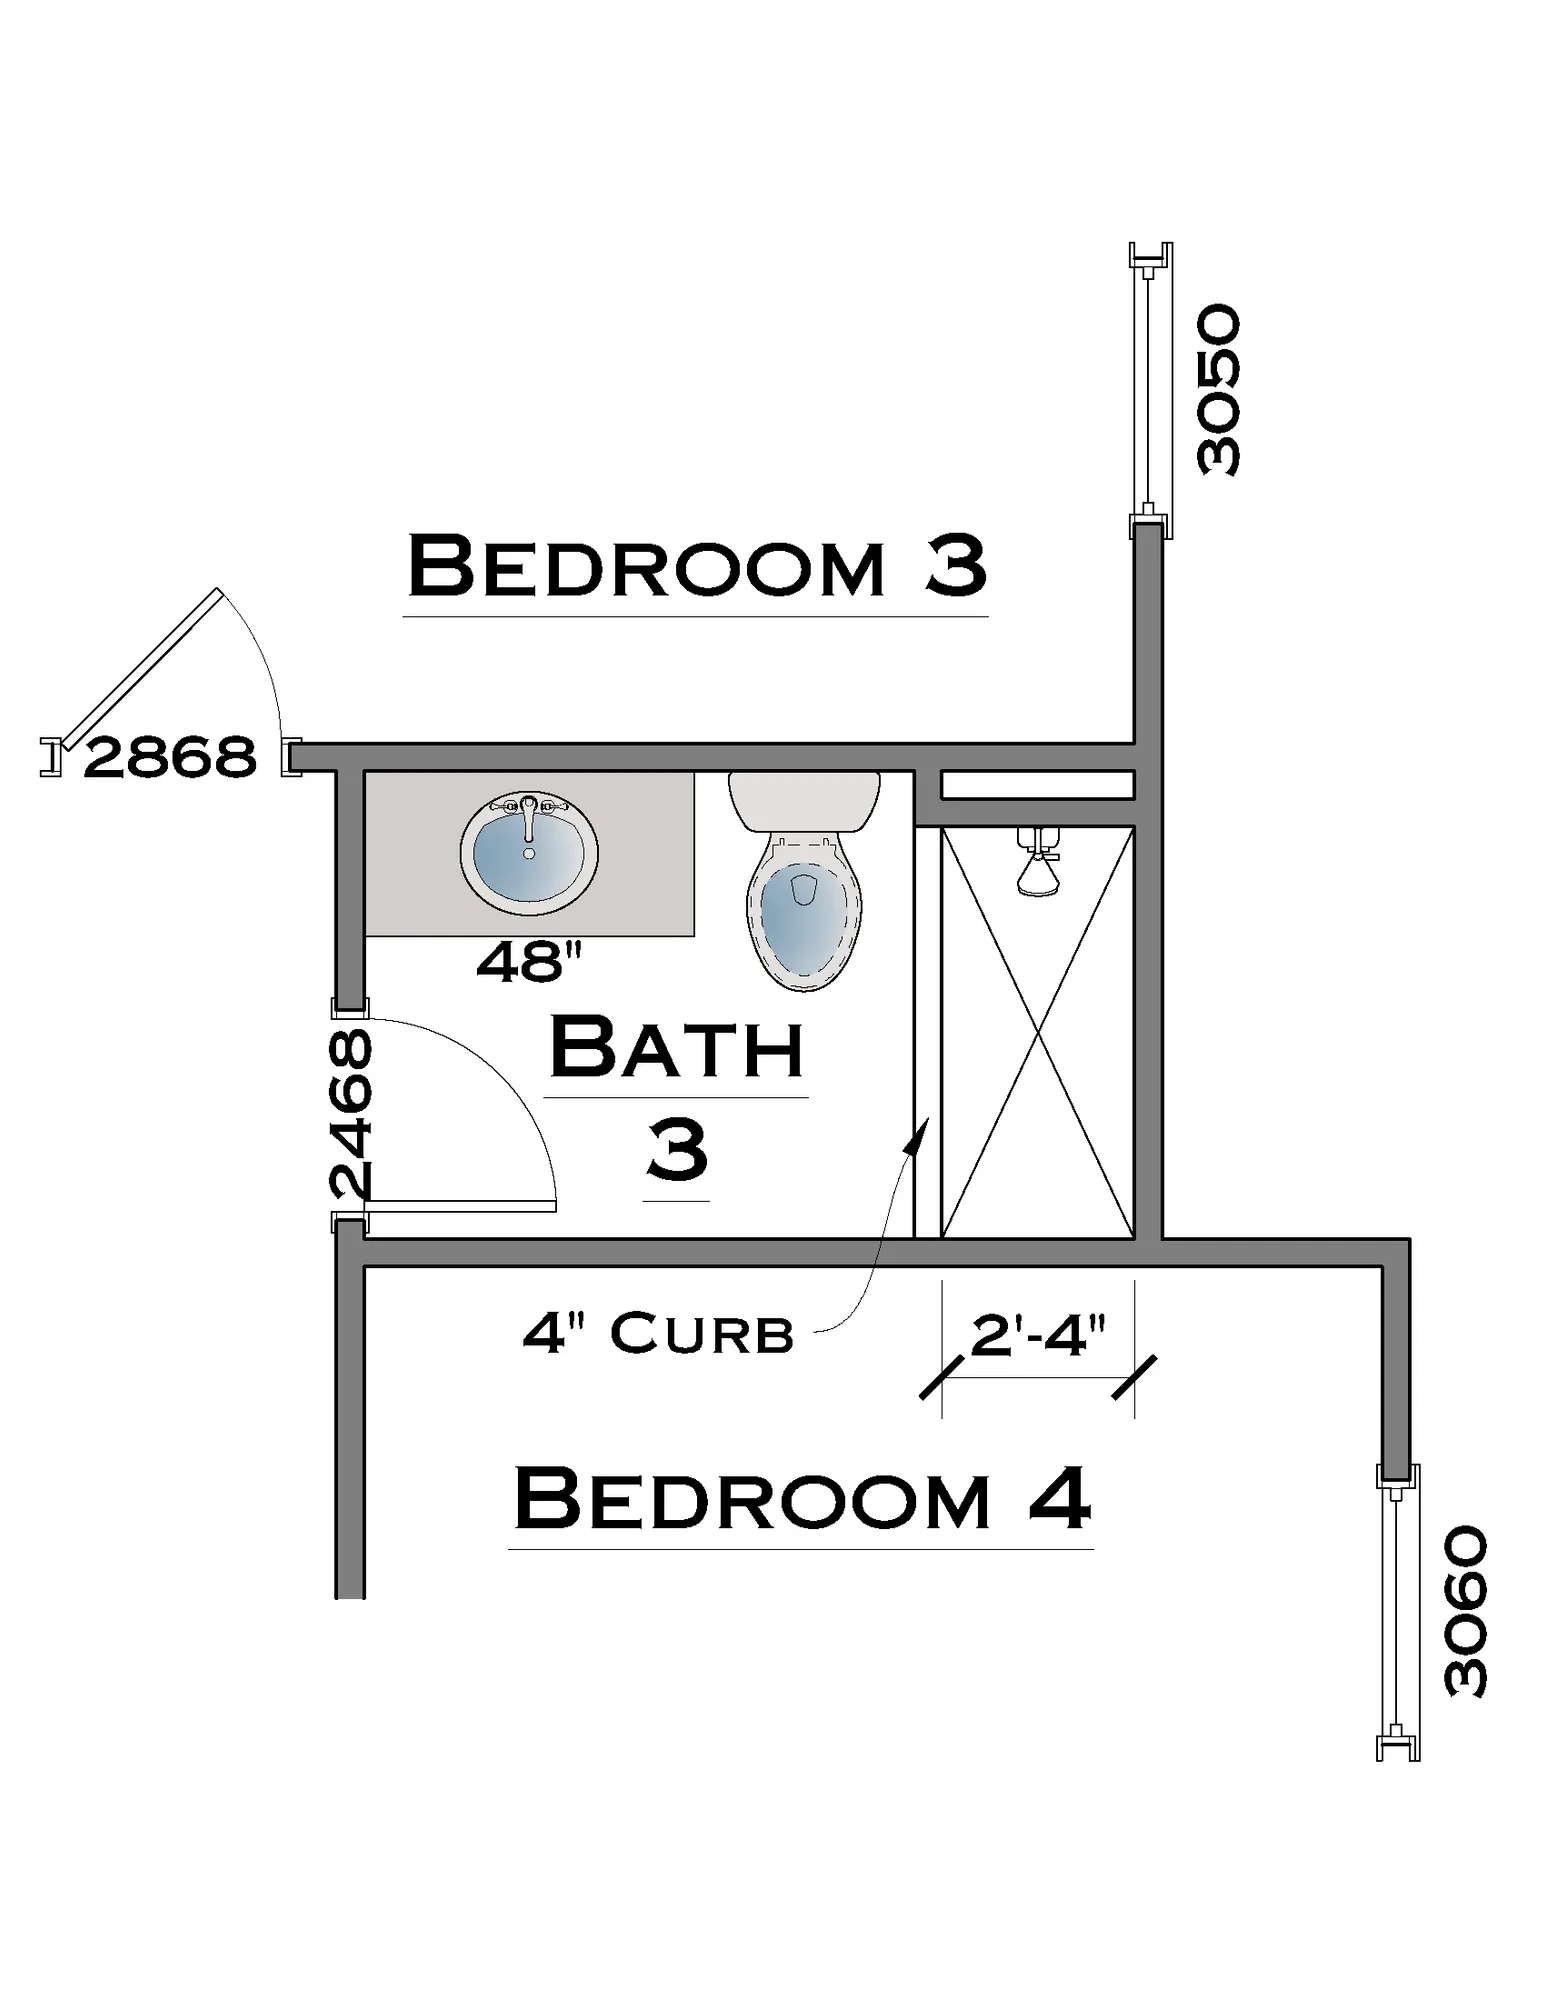 Bath 3 Tile Shower - undefined